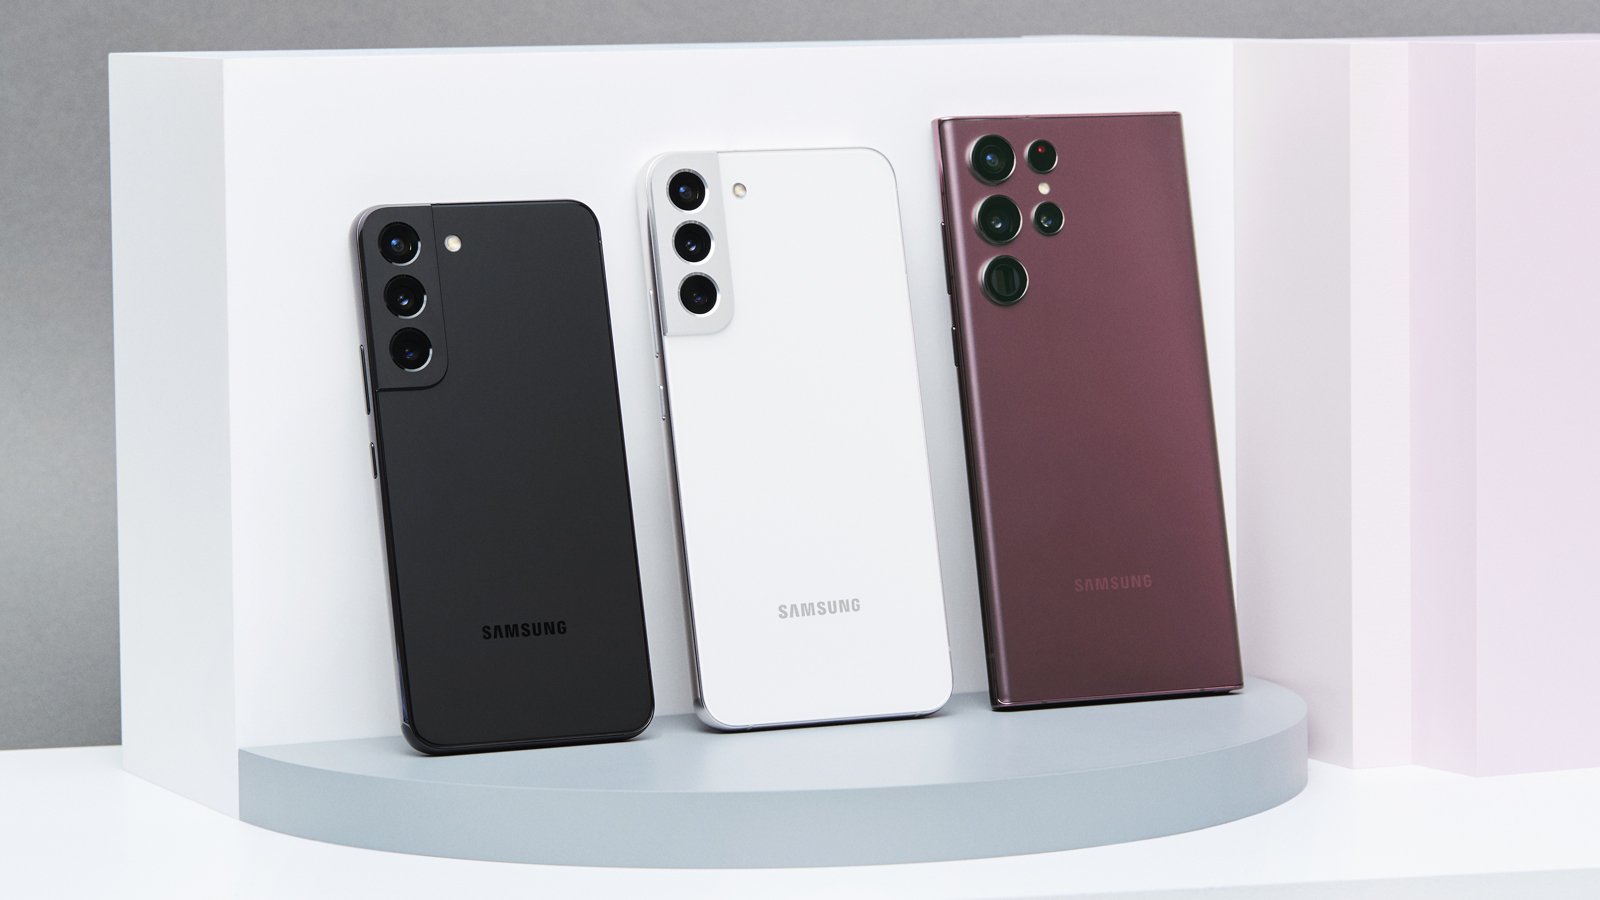 Семейство Samsung Galaxy S22, подпираемое задней частью выставленных телефонов.